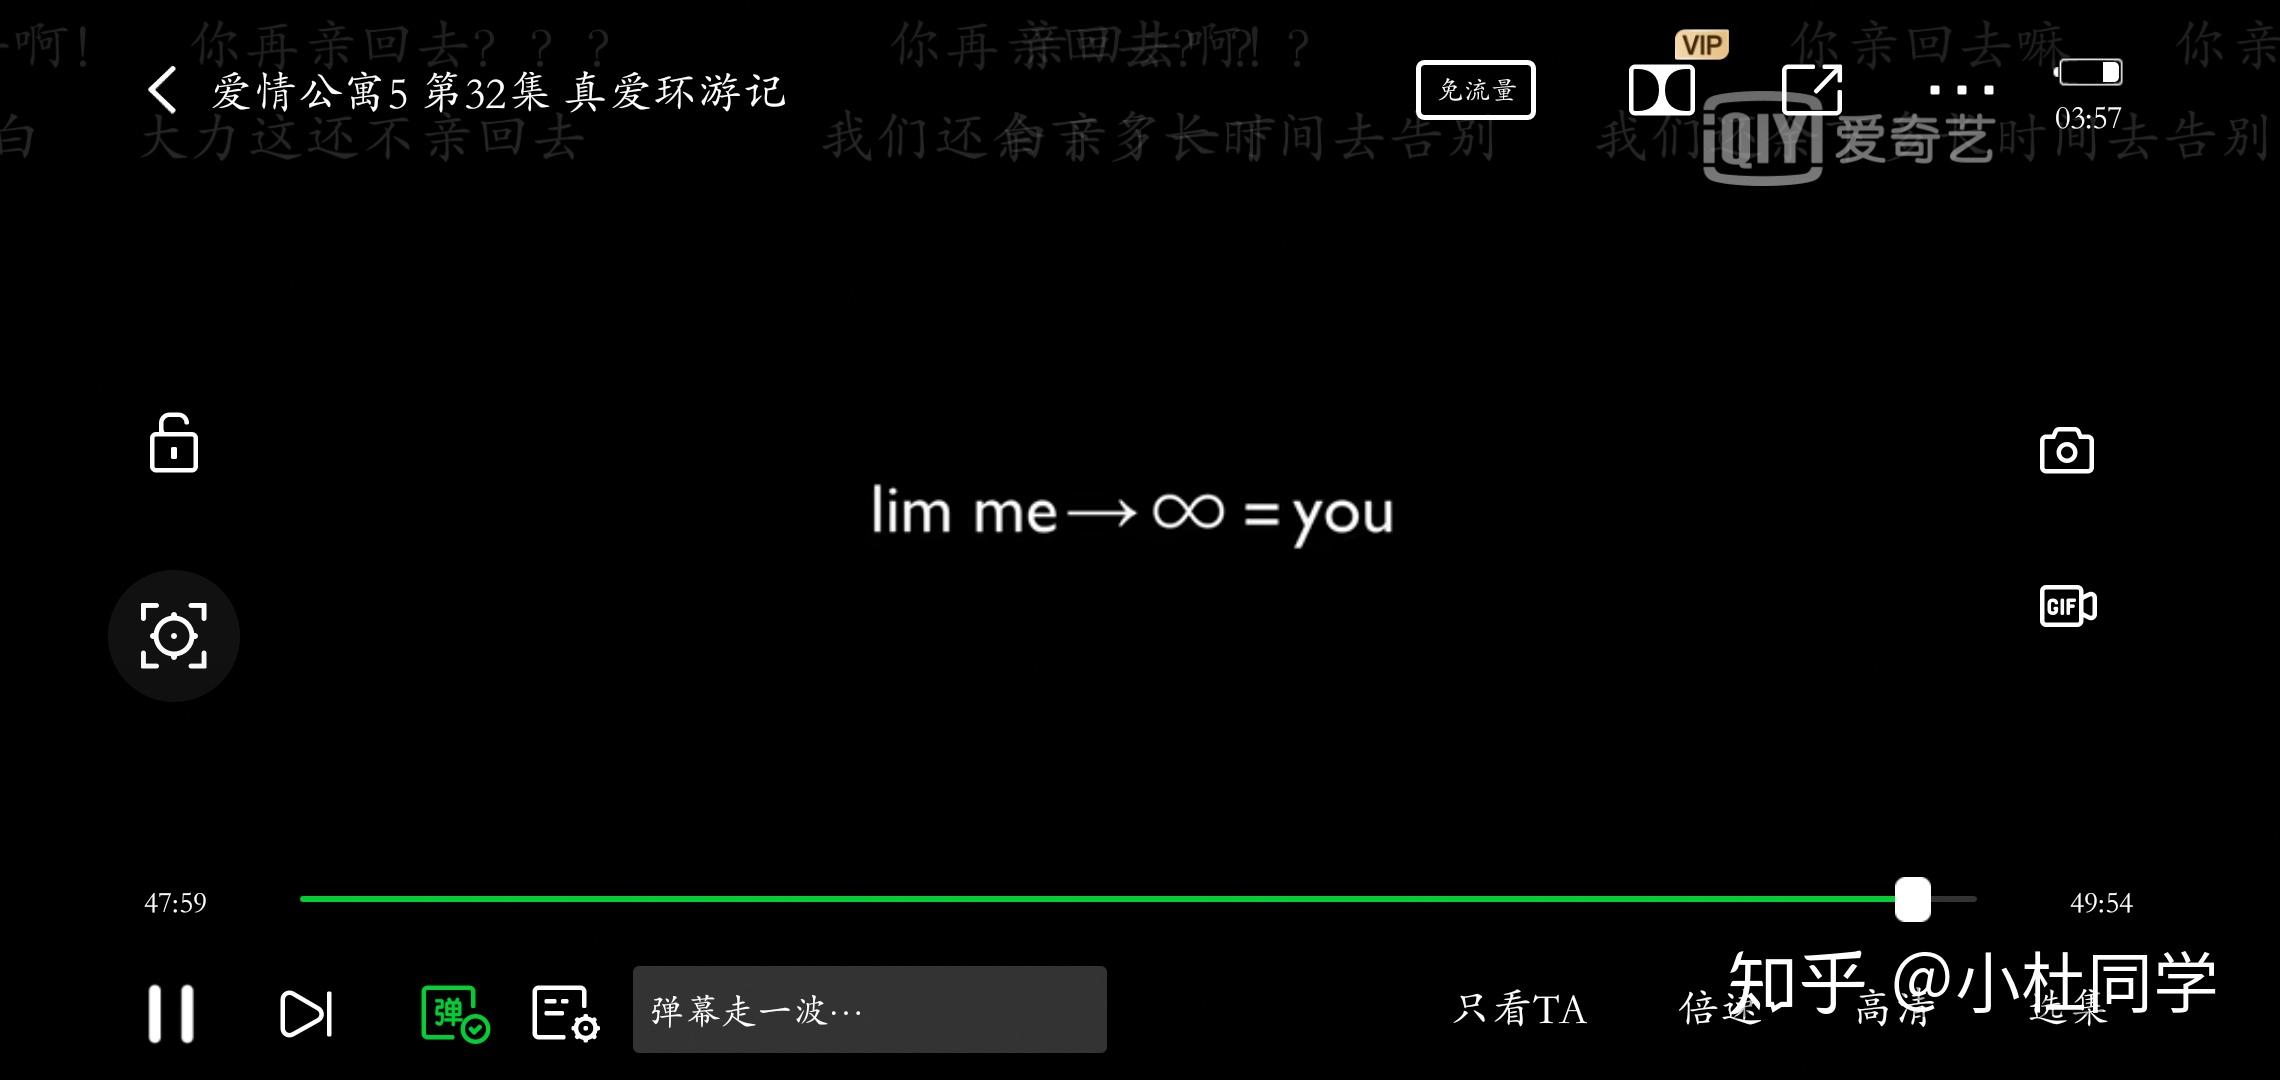 爱情公寓中32集,lim me∞=you?是什么意思?